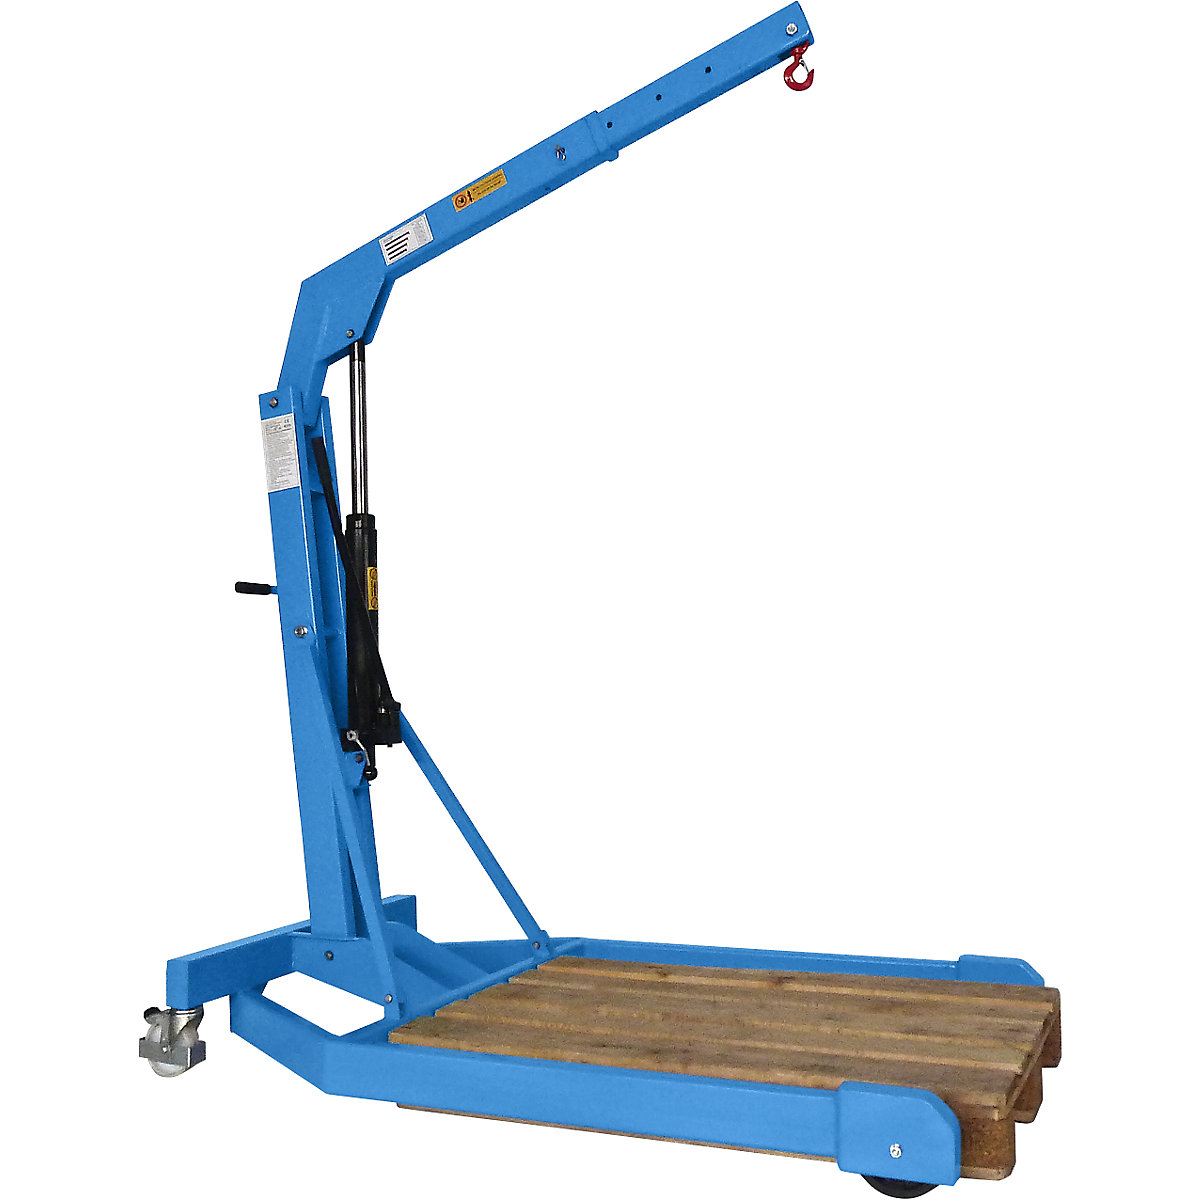 Grúa de taller BLUE: carga máx. 1500 kg, bastidor rodante paralelo